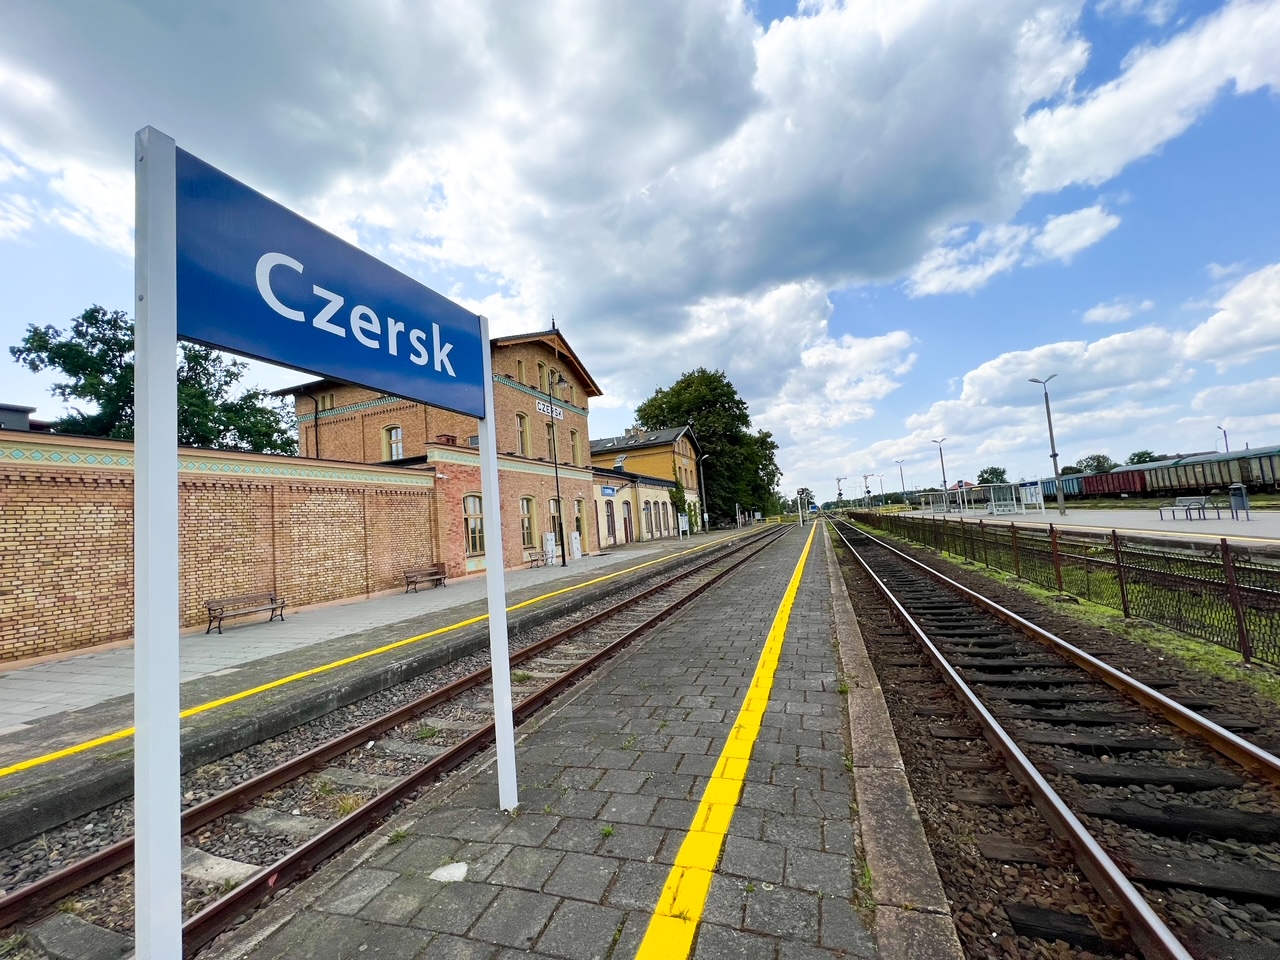 Nowy rozkład PKP dla stacji w Czersku